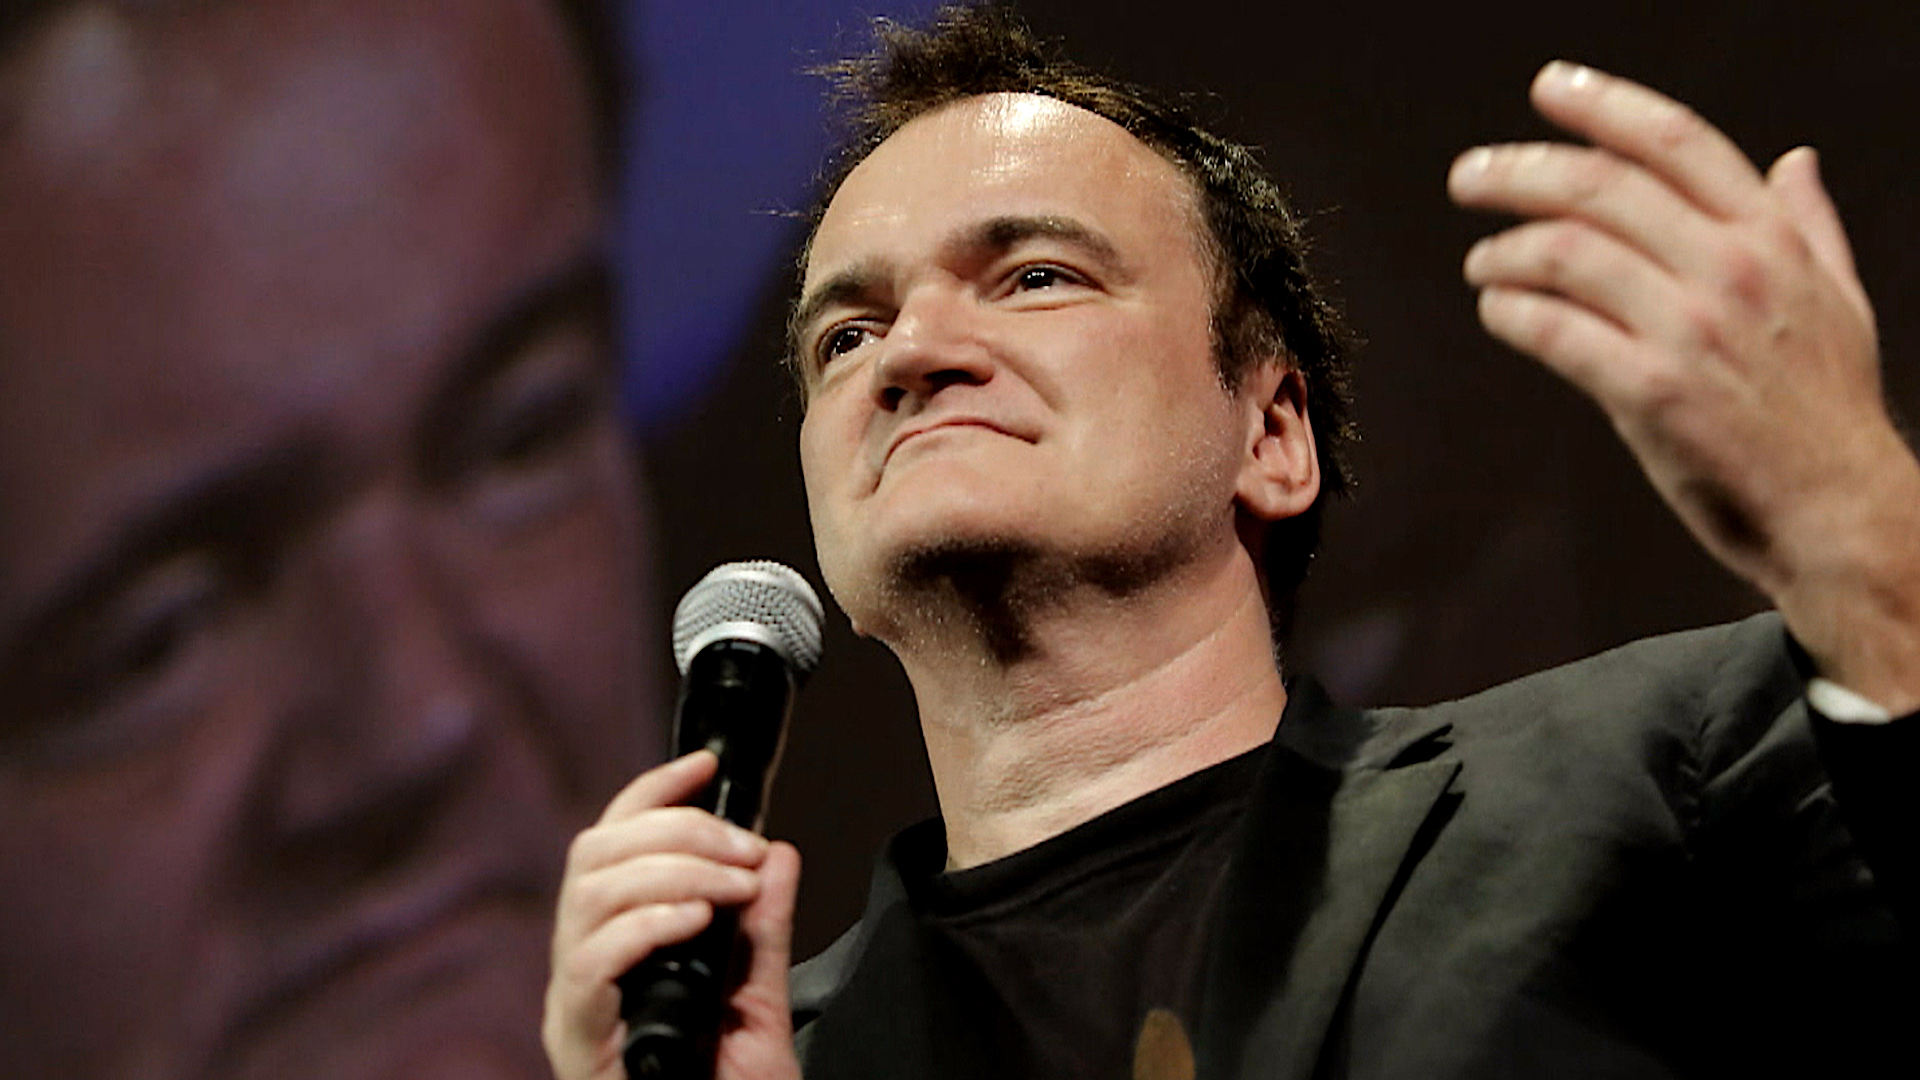 Editoriale | Quentin Tarantino: l’insostenibile leggerezza del post-moderno